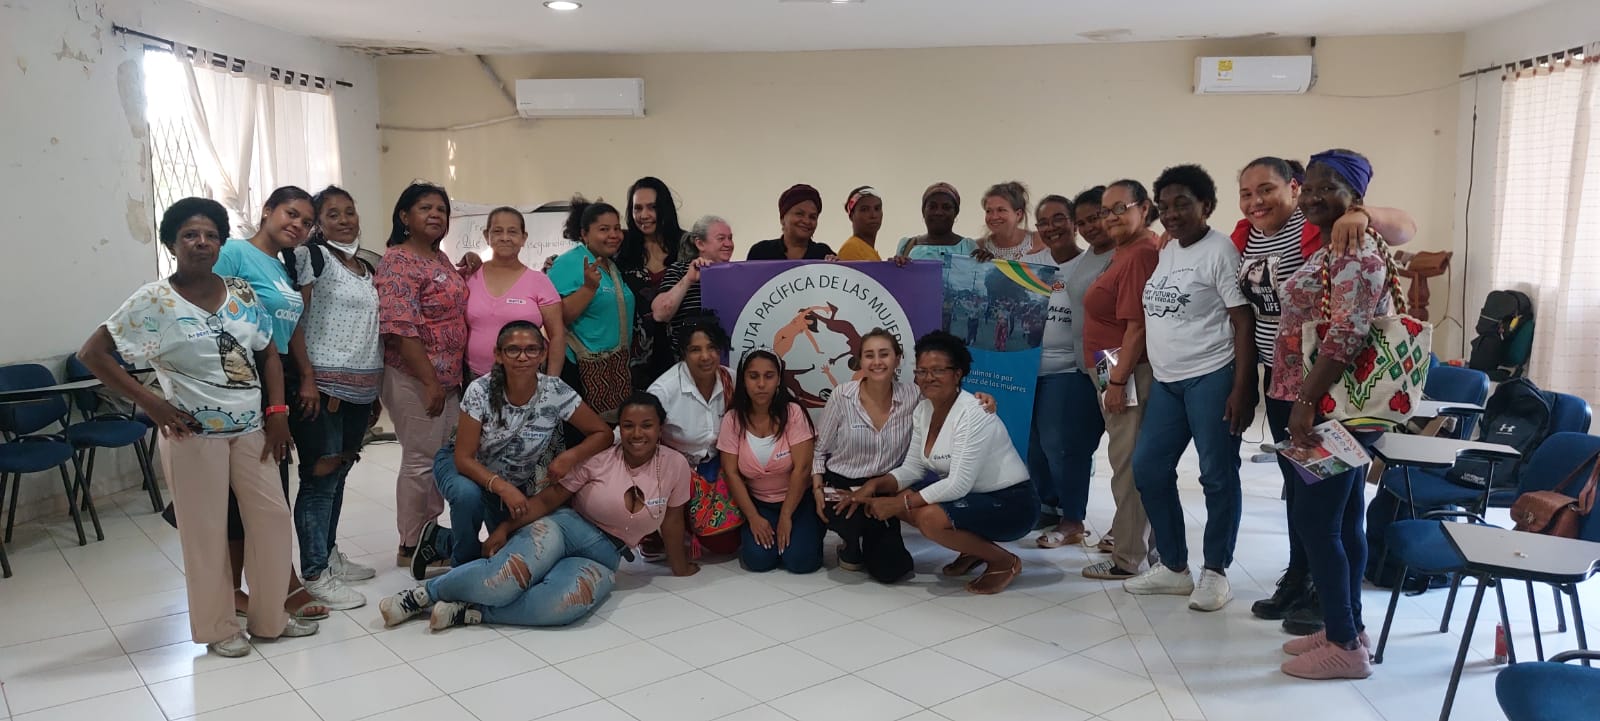 Las sobrevivientes que participaron en el informe La verdad de las mujeres víctimas del conflicto armado en Colombia, en el departamento de Bolívar.